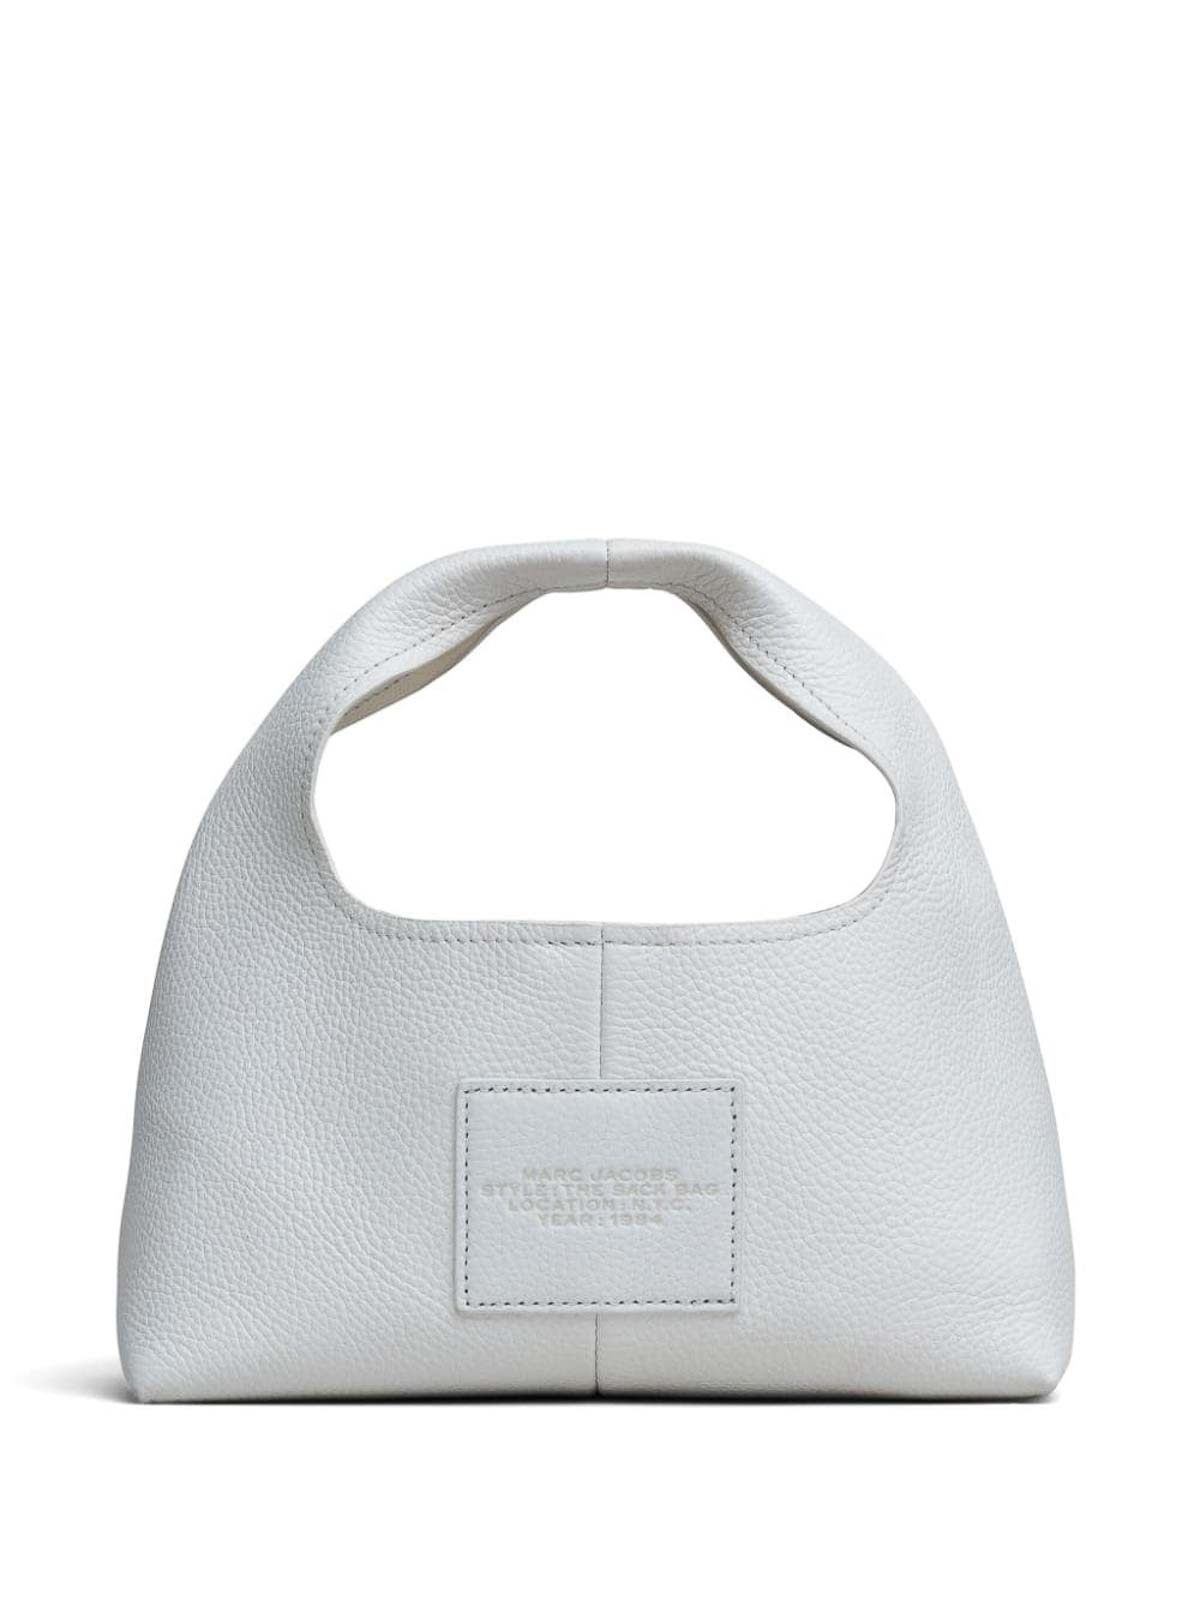 Shop Handbags Marc Jacobs Online